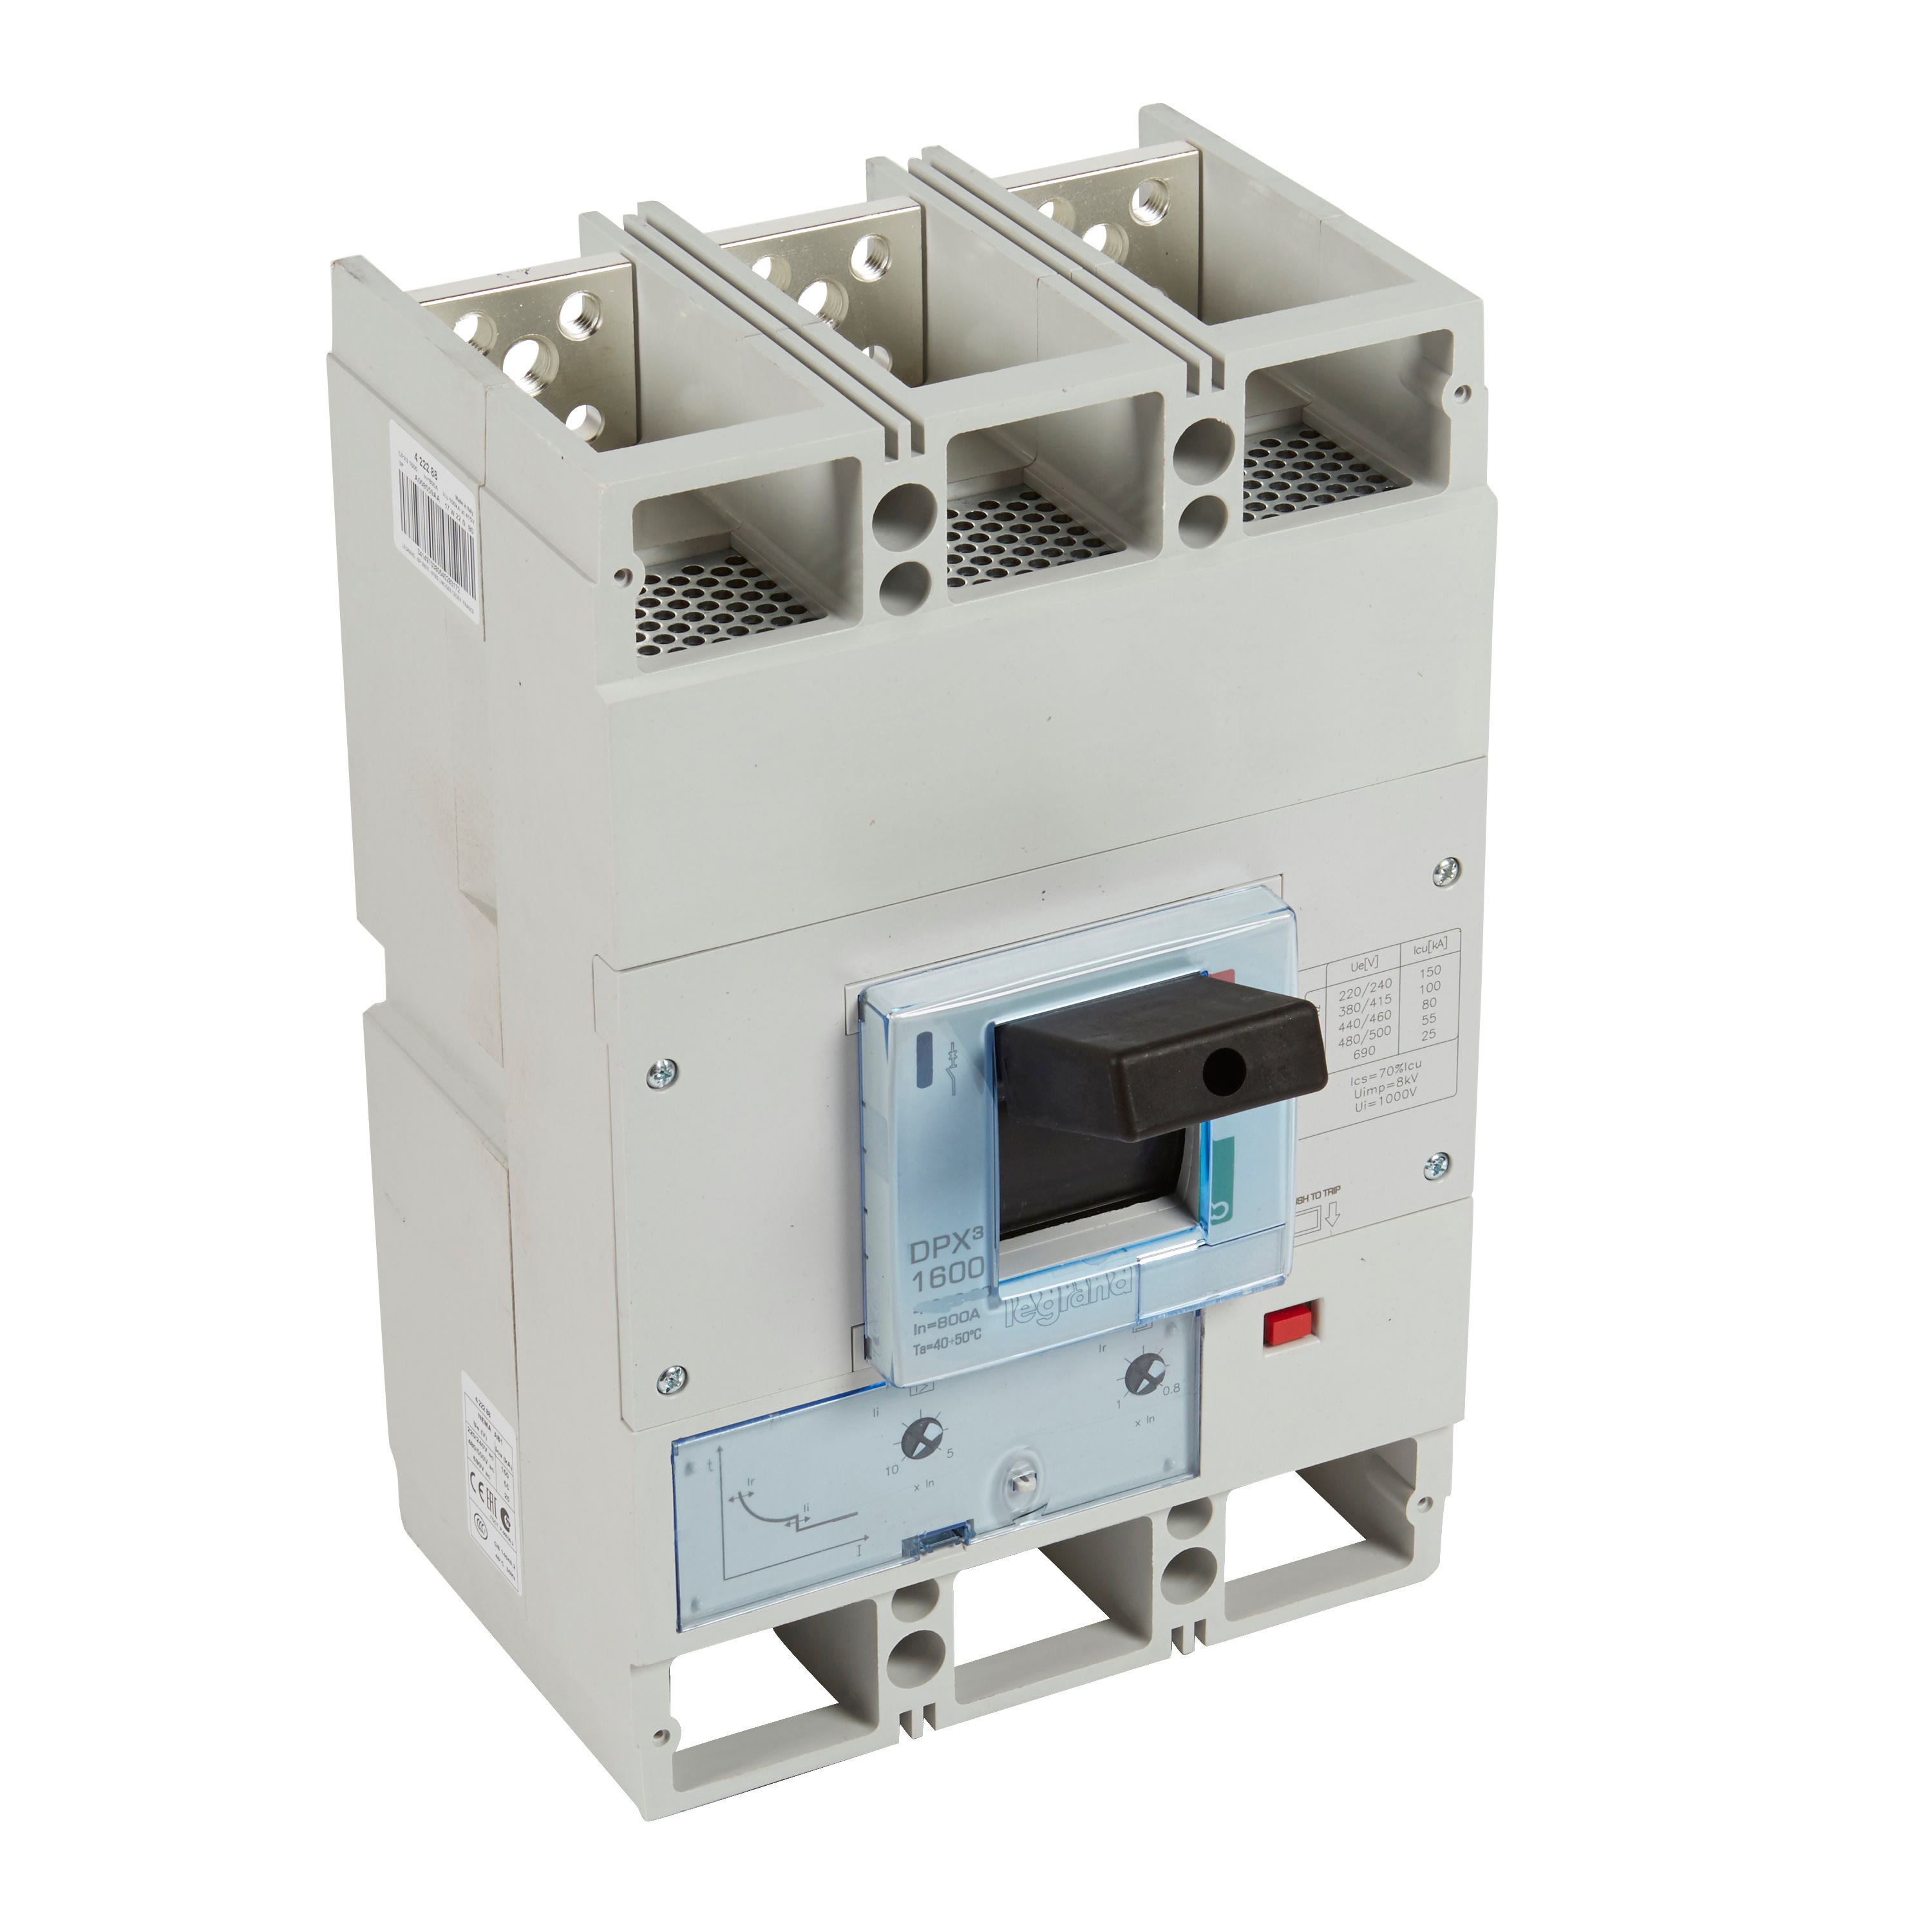 Legrand - Disjoncteur magnetothermique DPX31600 pouvoir de coupure 100kA 400V - 3P 1250A